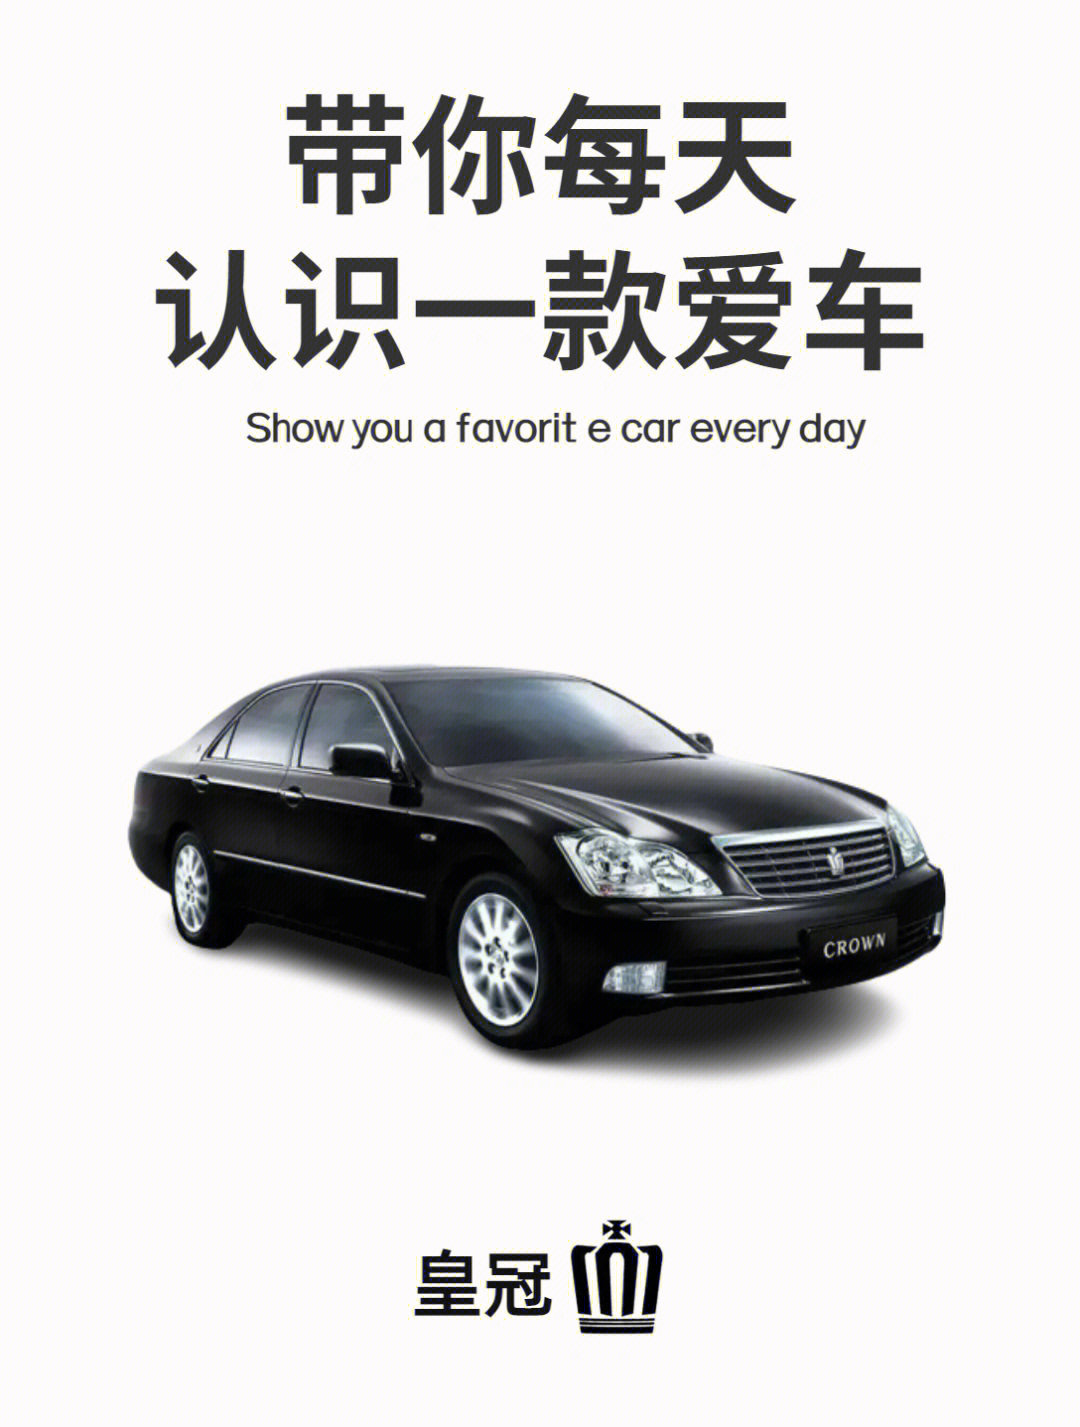 一汽丰田皇冠2007广告图片